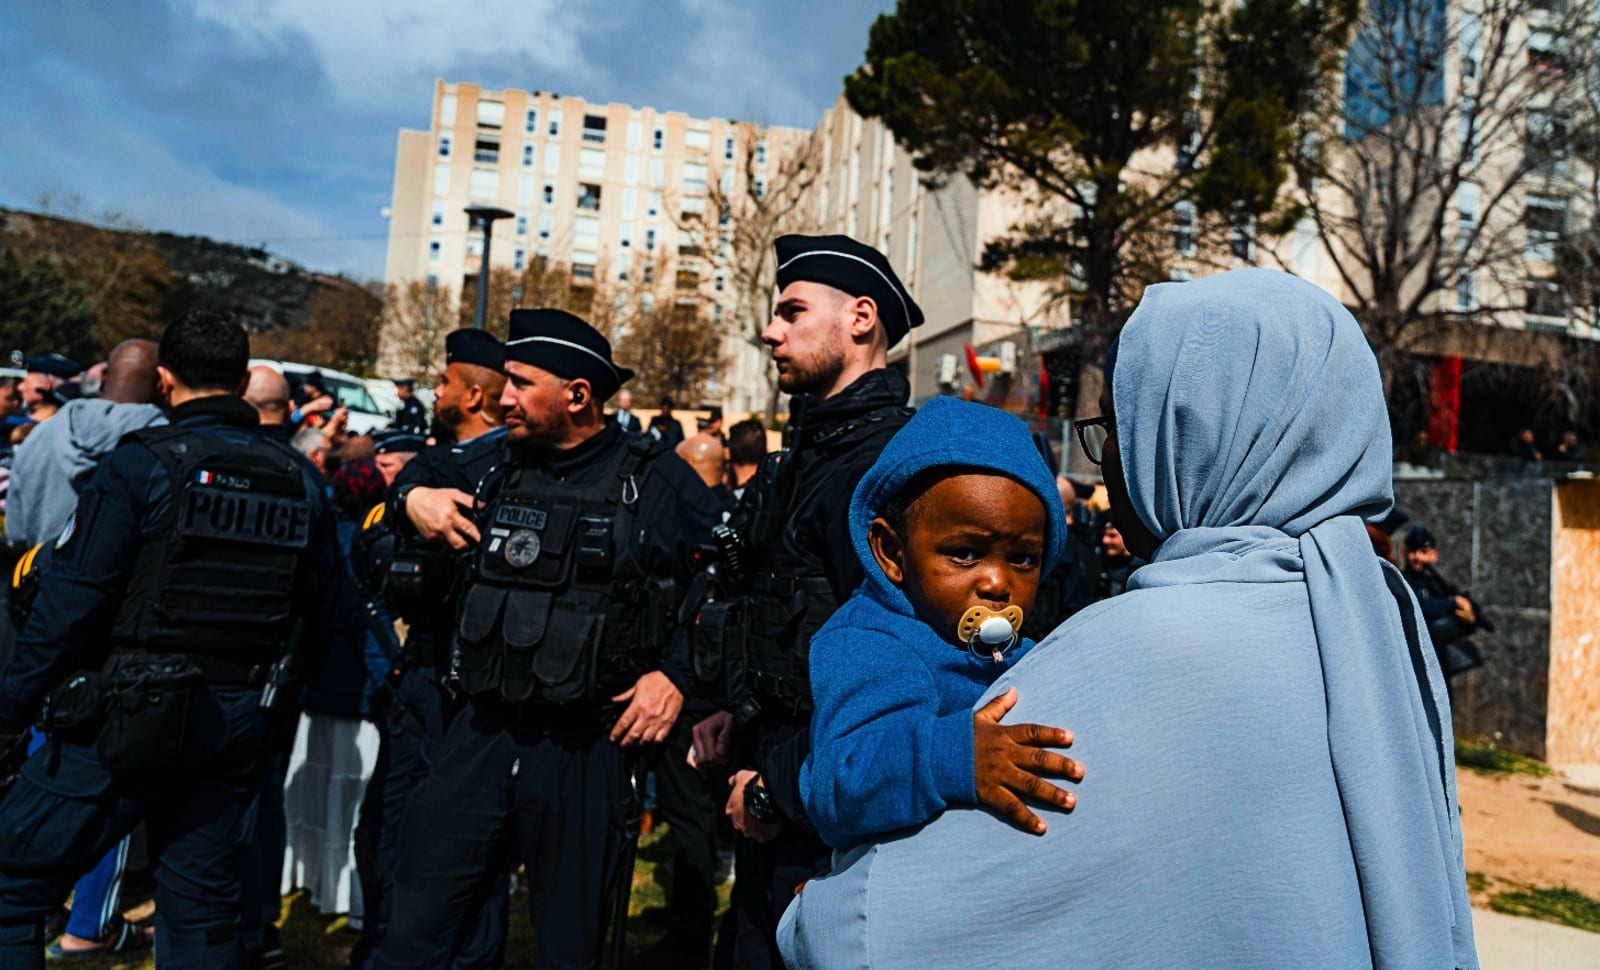 Insécurité: en France, un désordre XXL